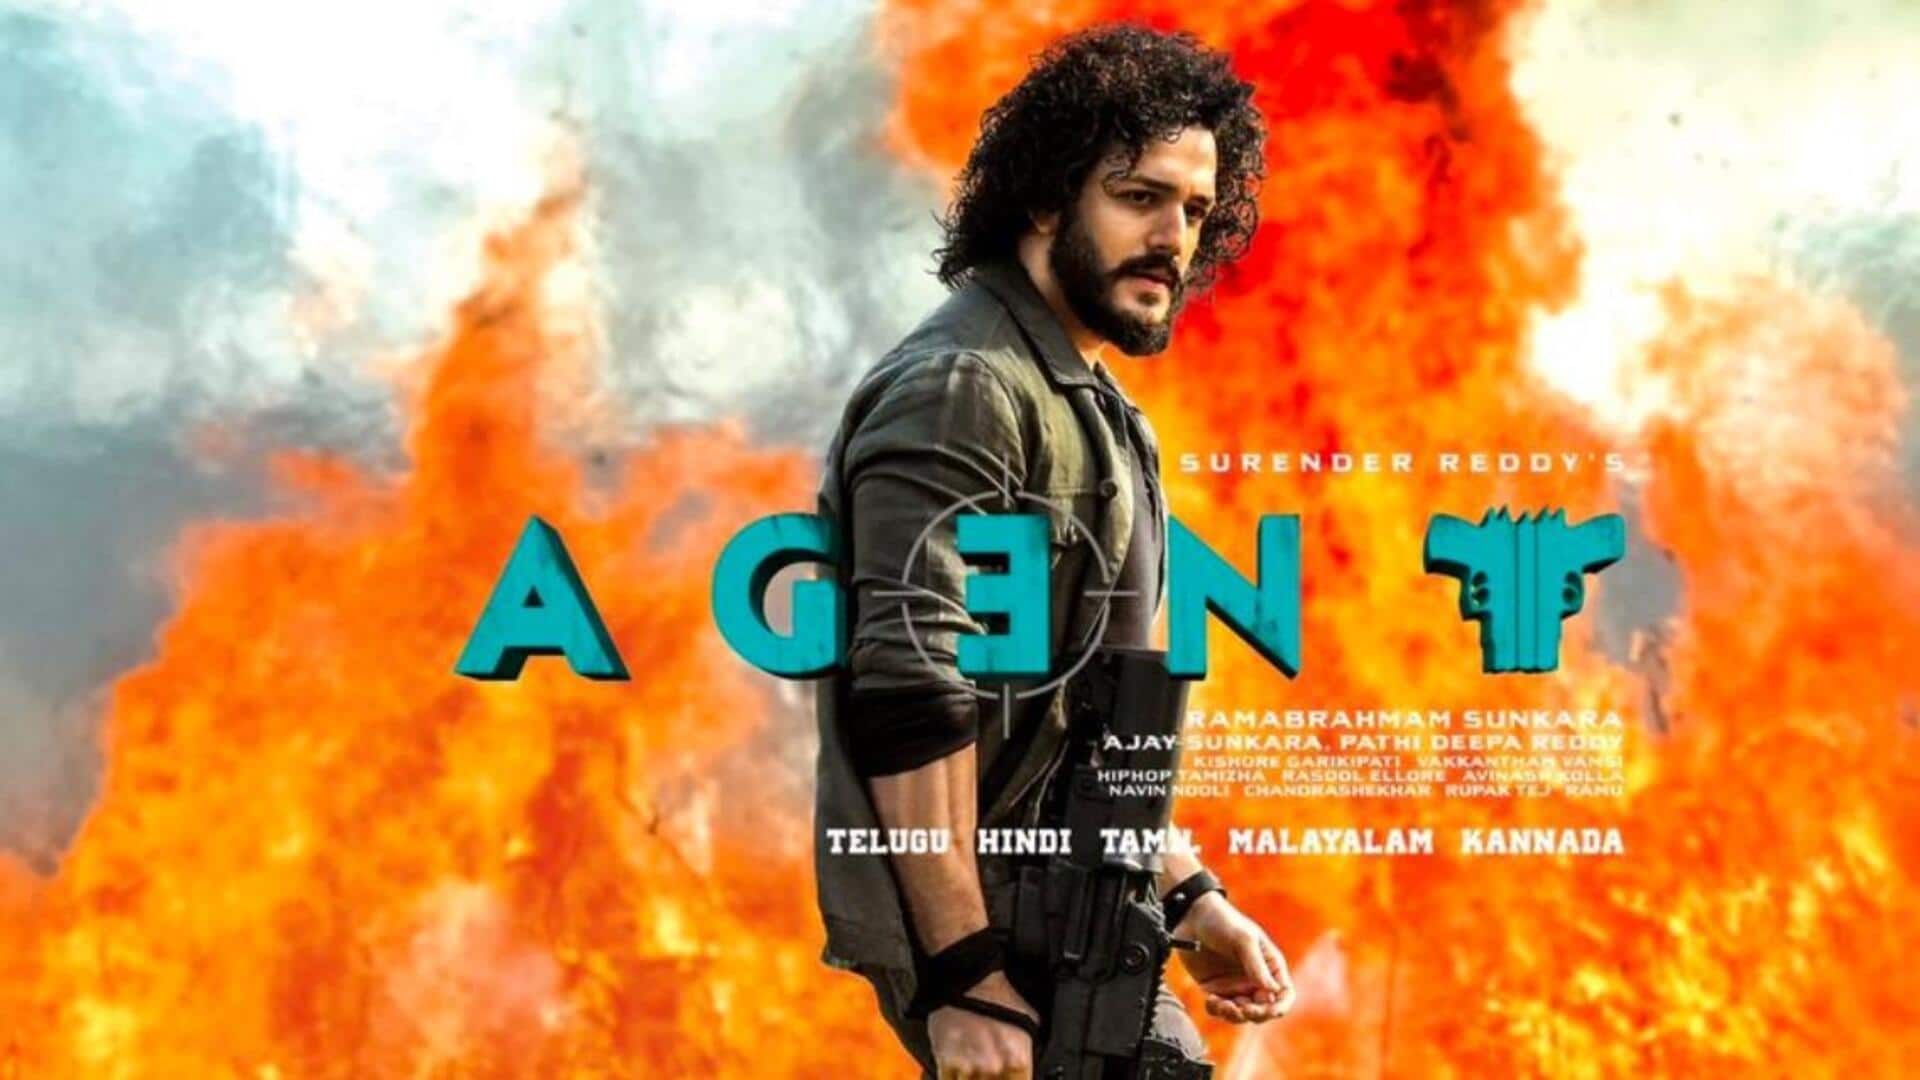 अखिल अक्किनेनी की फिल्म 'एजेंट' का पोस्टर जारी, हिंदी में भी होगी रिलीज